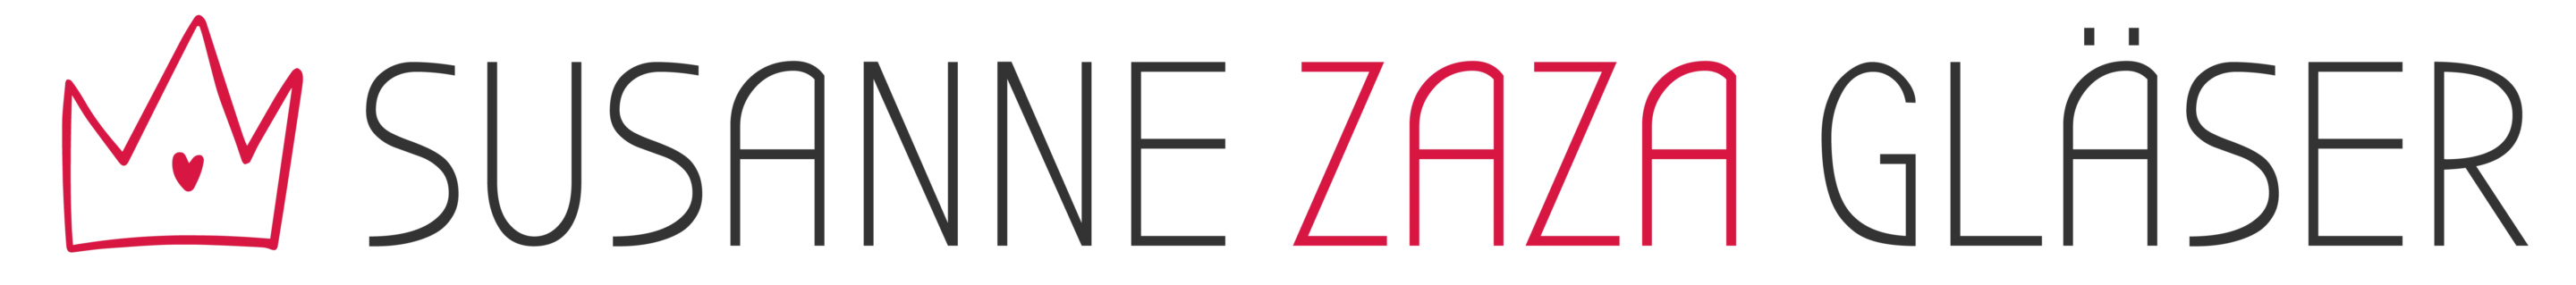 Logo mit einem roten Kronensymbol, gefolgt vom Text „Susanne Zaza Gläser“ in stilisierten Buchstaben, wobei „Zaza“ rot hervorgehoben ist.